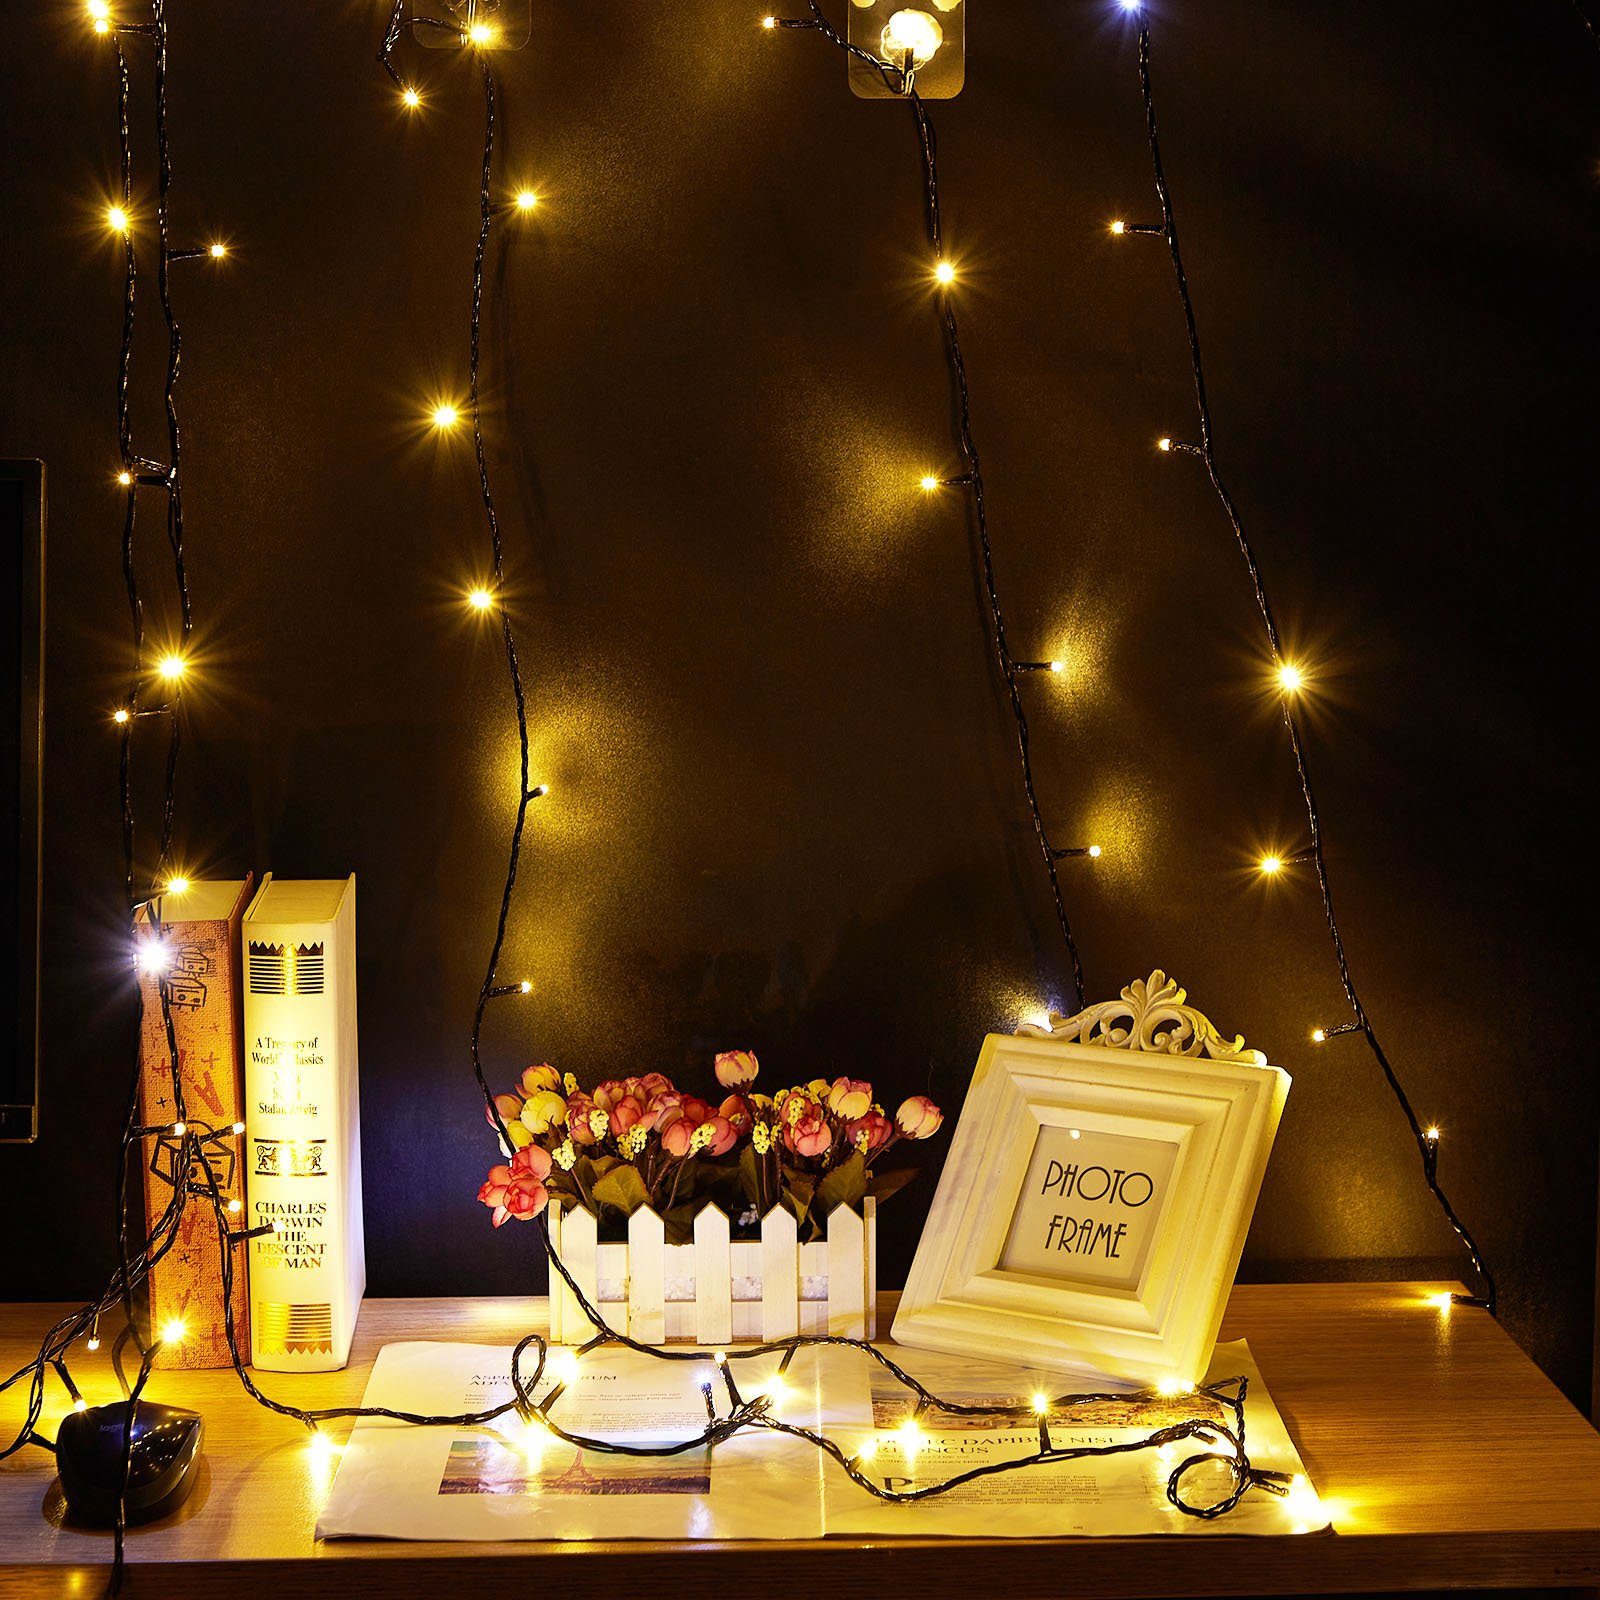 LED-Baummantel for Rosnek 20m Lichterkette LED Außen Weihnachten Baum, Warmweiß Innen Party Garten 156-flammig